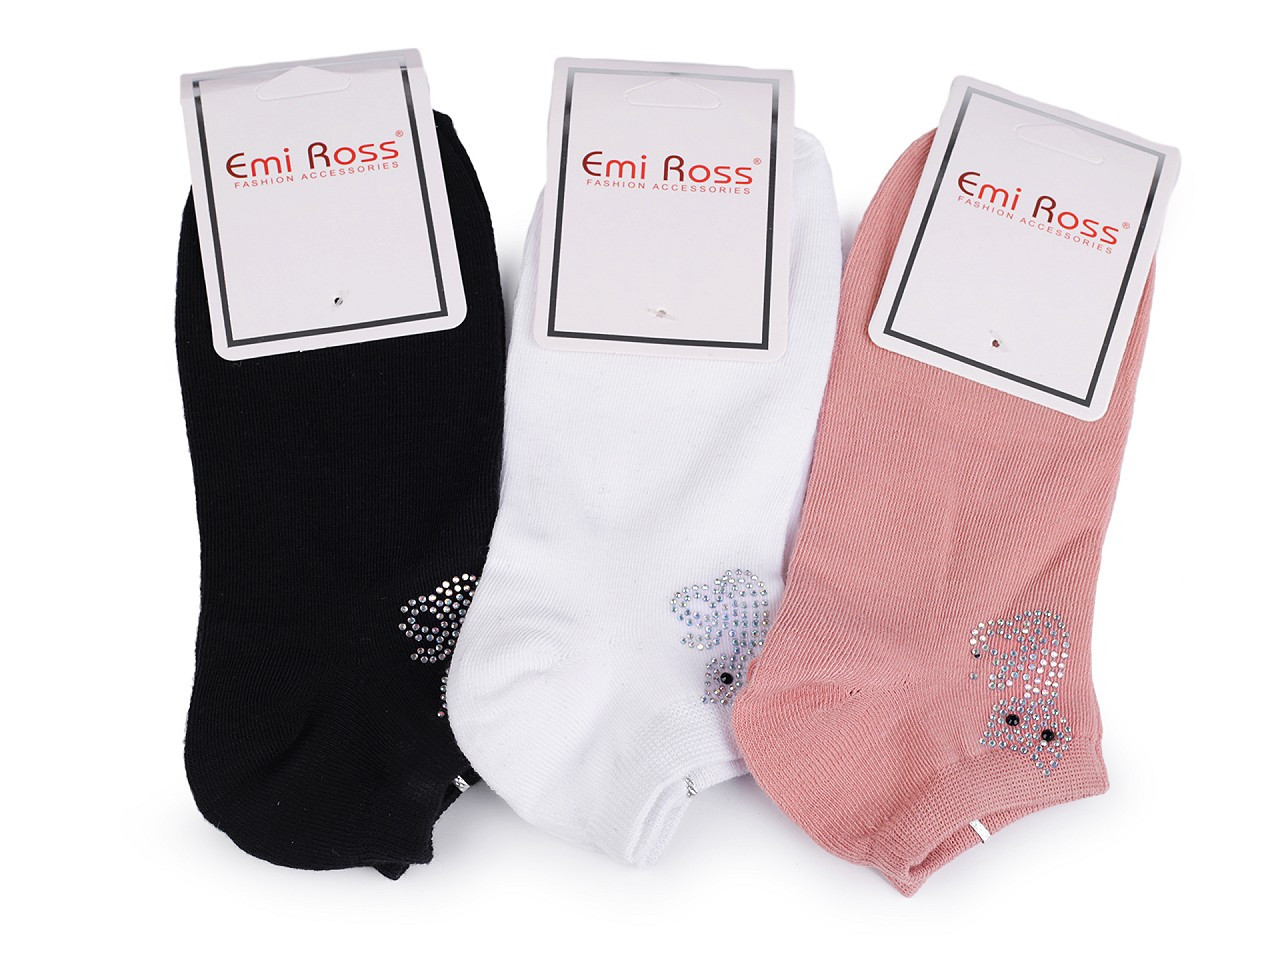 Dámské bavlněné ponožky kotníkové s kamínky Emi Ross, barva 8 (vel. 39-42) mix